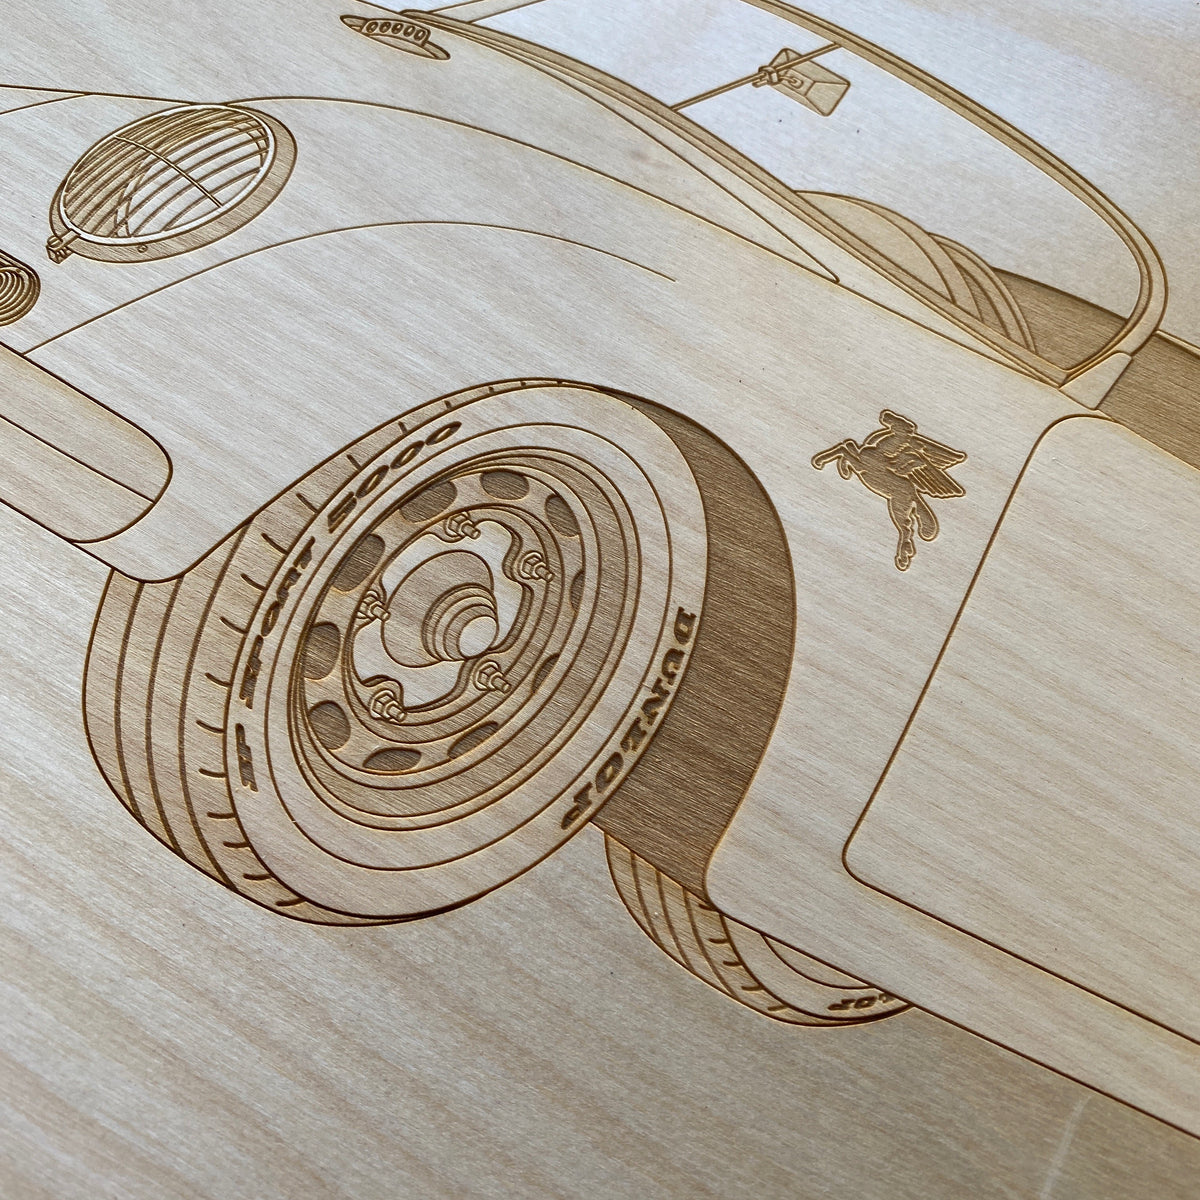 Emory Outlaw 356 Speedster Framed Wood Engraved Artwork